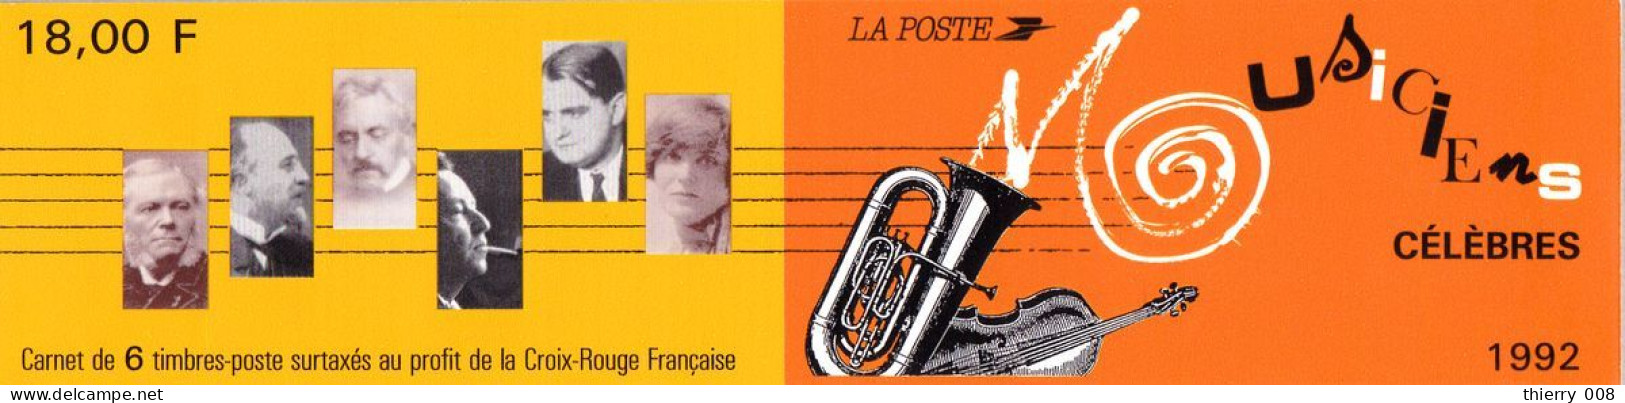 BC 2753  Carnet Musicien Célèbres 1992  César FRANCK  Erik SATIE  Florent SCHMITT  Arthur HONEGGER  Georges AURIC Germai - Personen